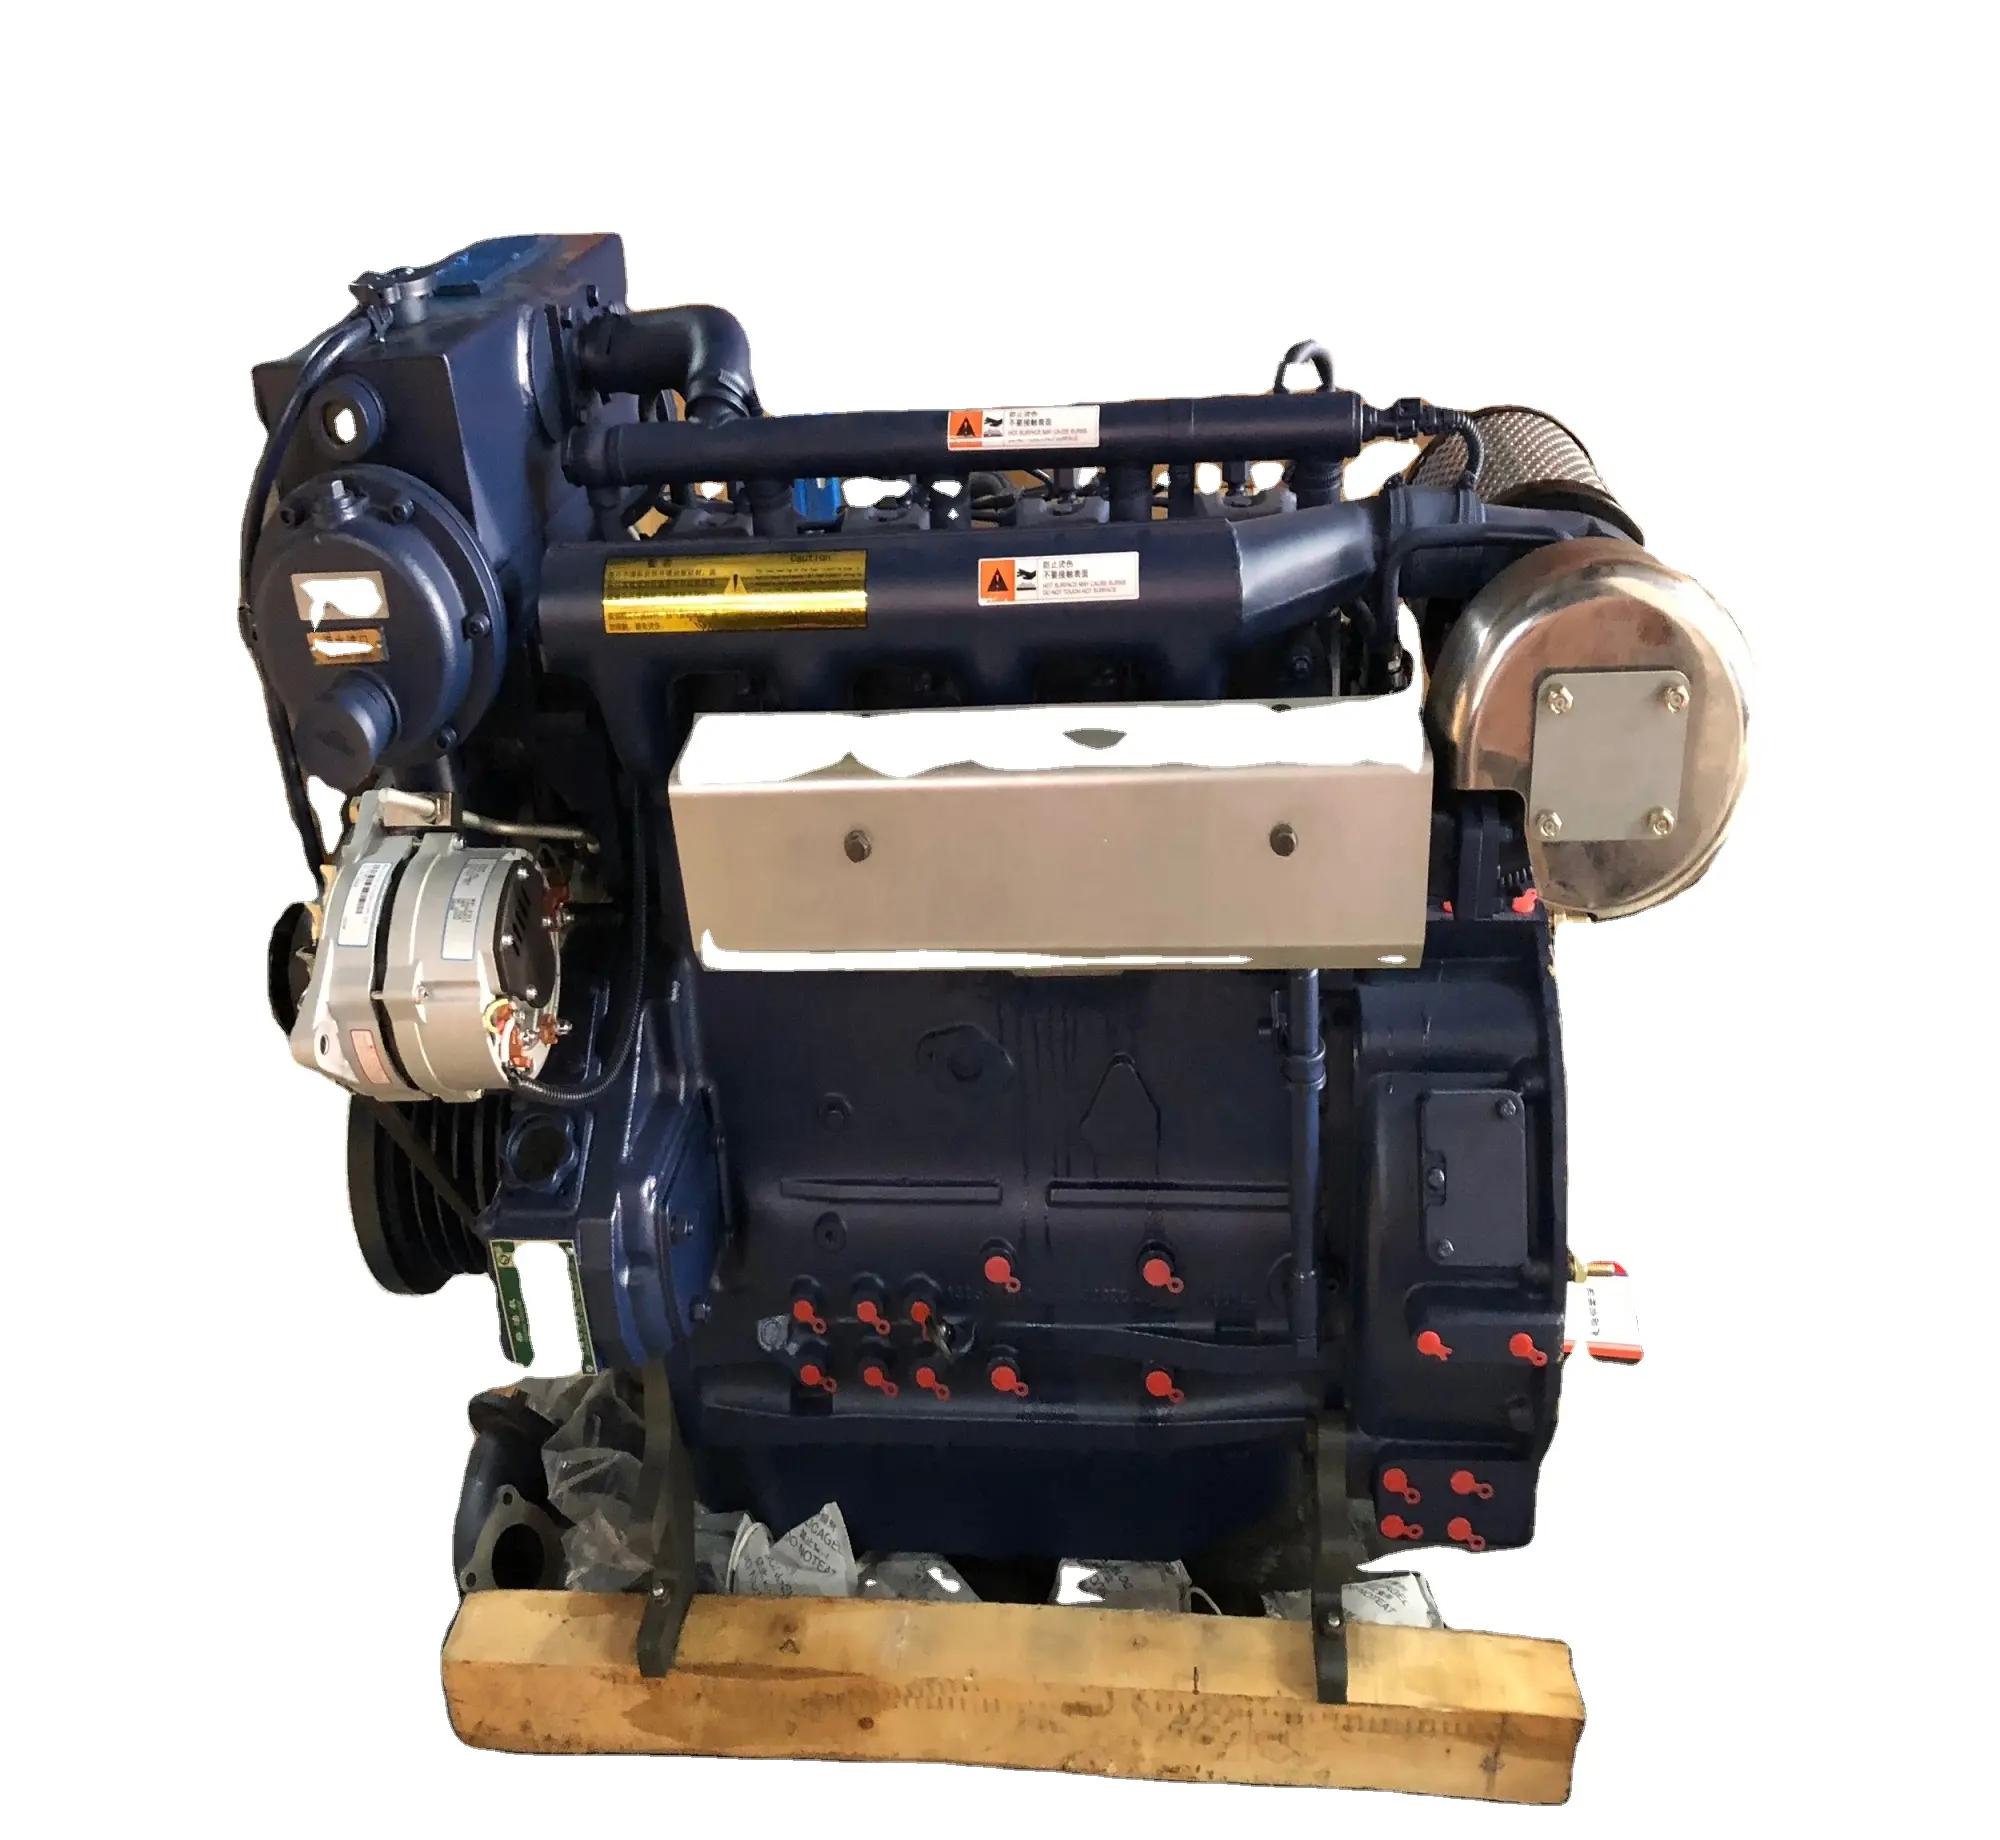 4 silindirli 102hp deniz dizel motor weichai deutz motor WP4C102-21 deniz motoru